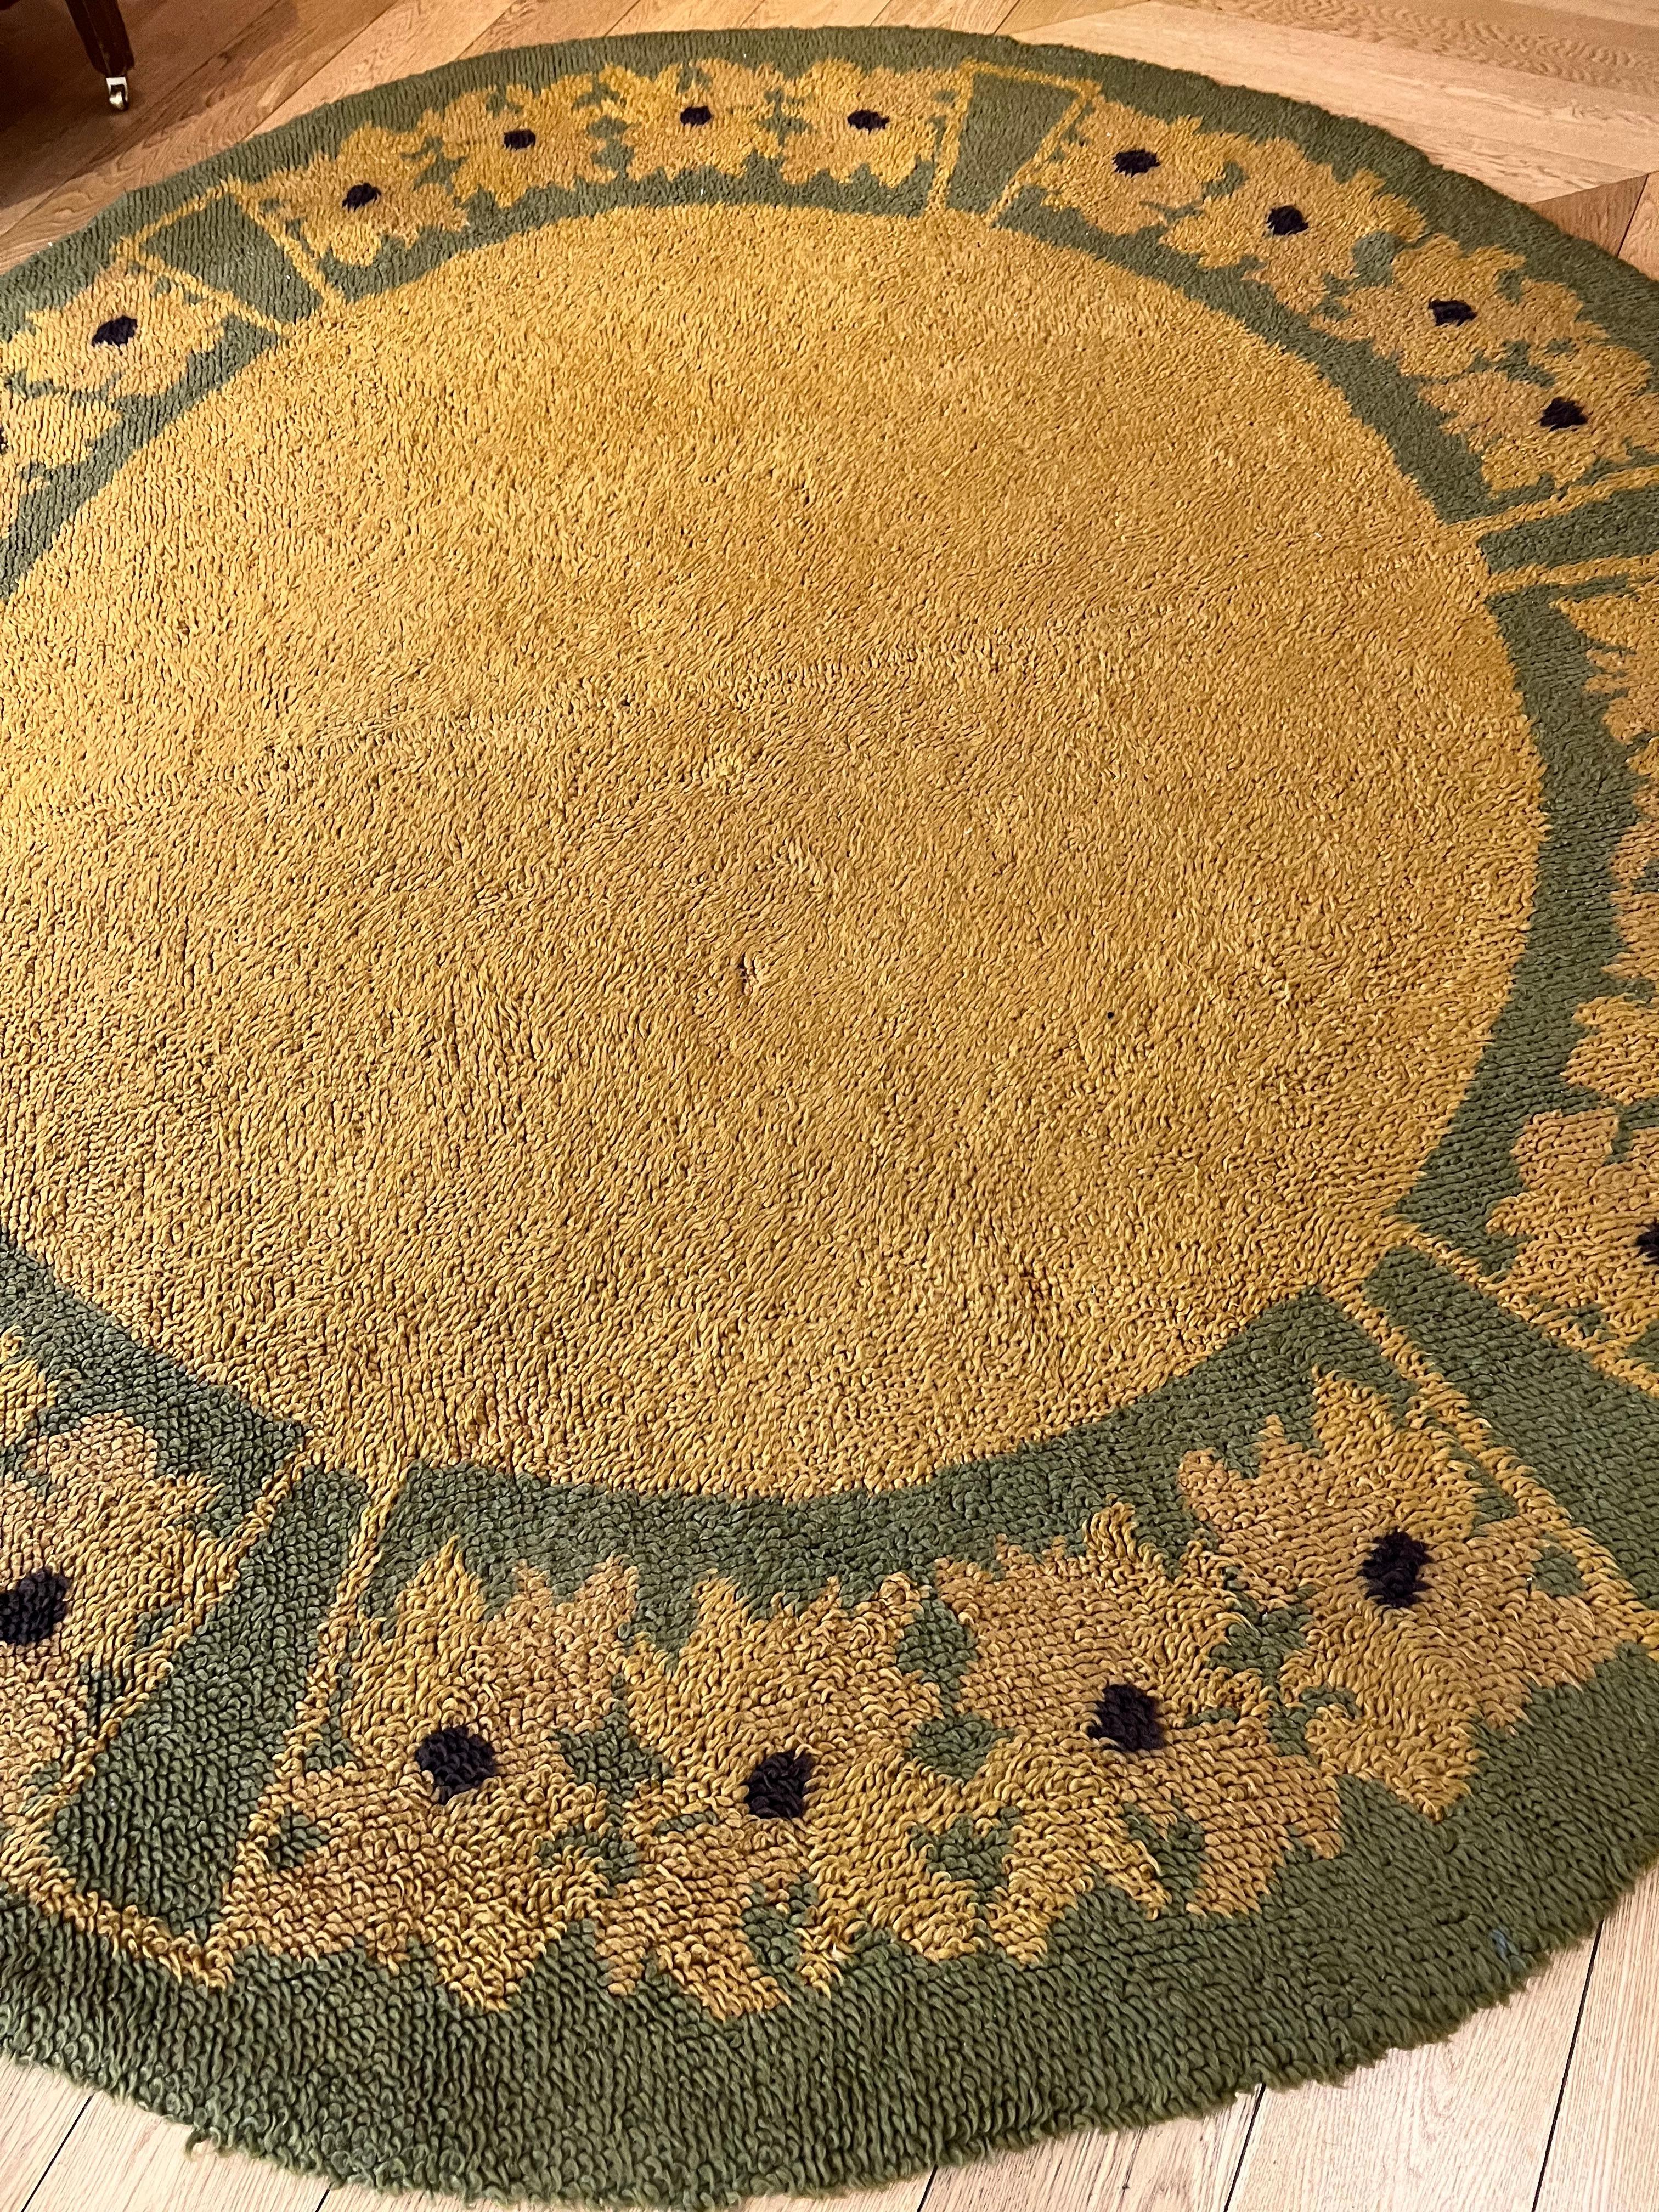 Handgefertigter Teppich, hergestellt in Nordeuropa. Der Teppich ist aus der Verbindung von zwei Teilen entstanden, die offensichtlich mit einem hausgemachten Rahmen geknüpft wurden, der zu klein war, um Teppiche dieser Größe herzustellen. 
Die Wolle